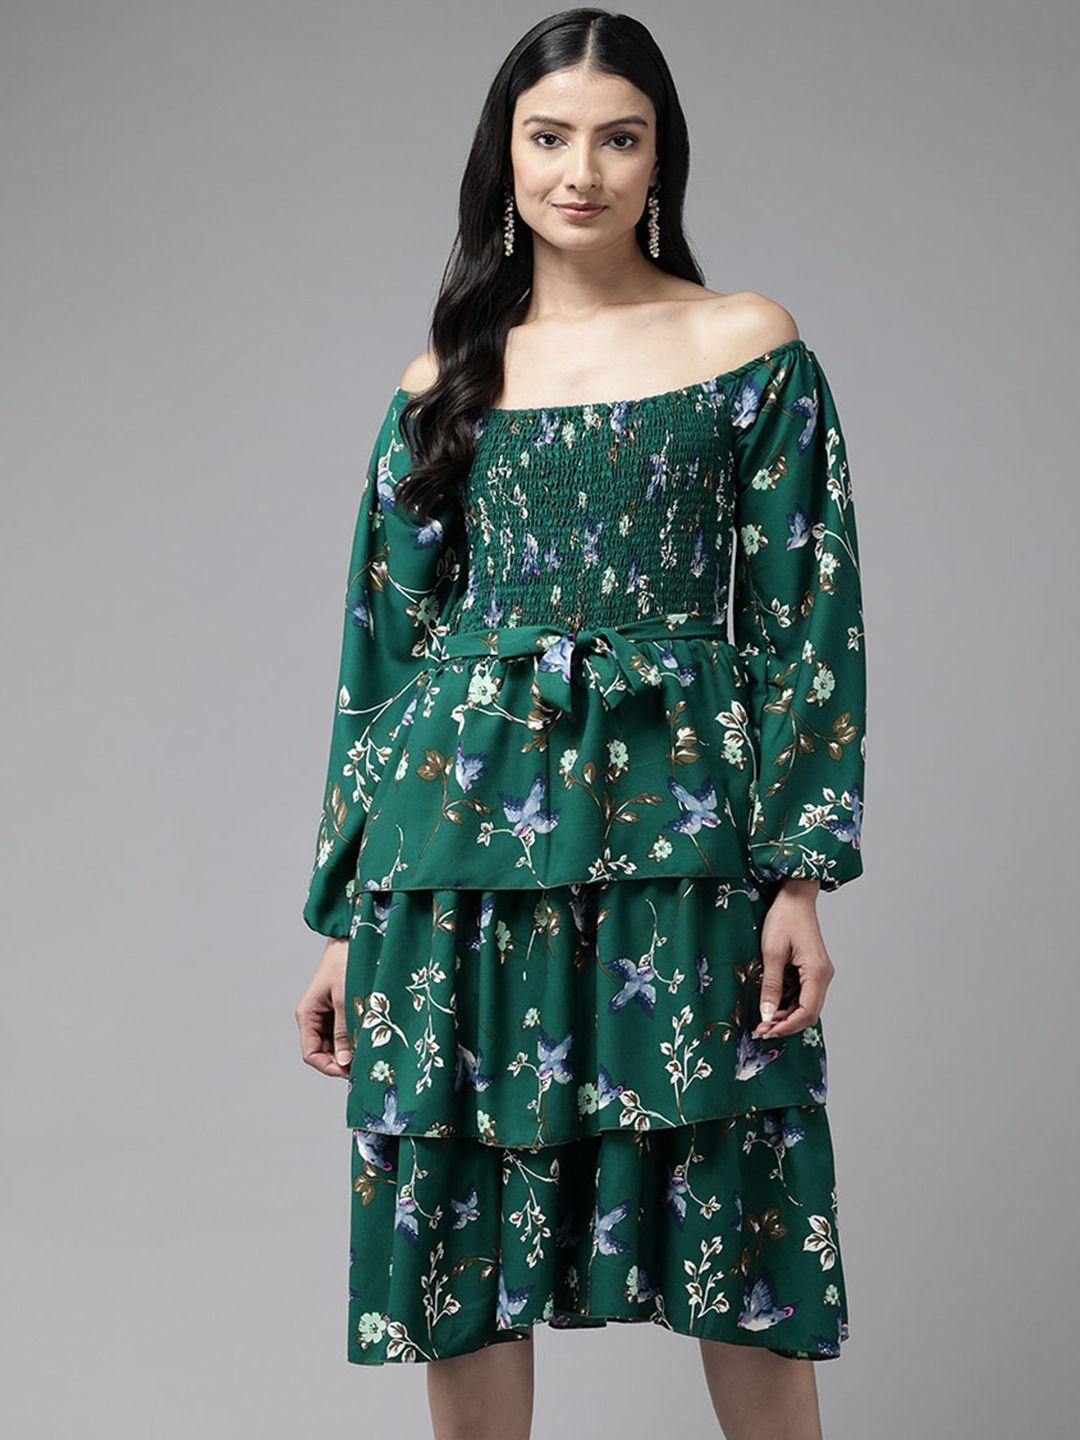 aarika-floral-printed-off-shoulder-georgette-a-line-dress-with-belt